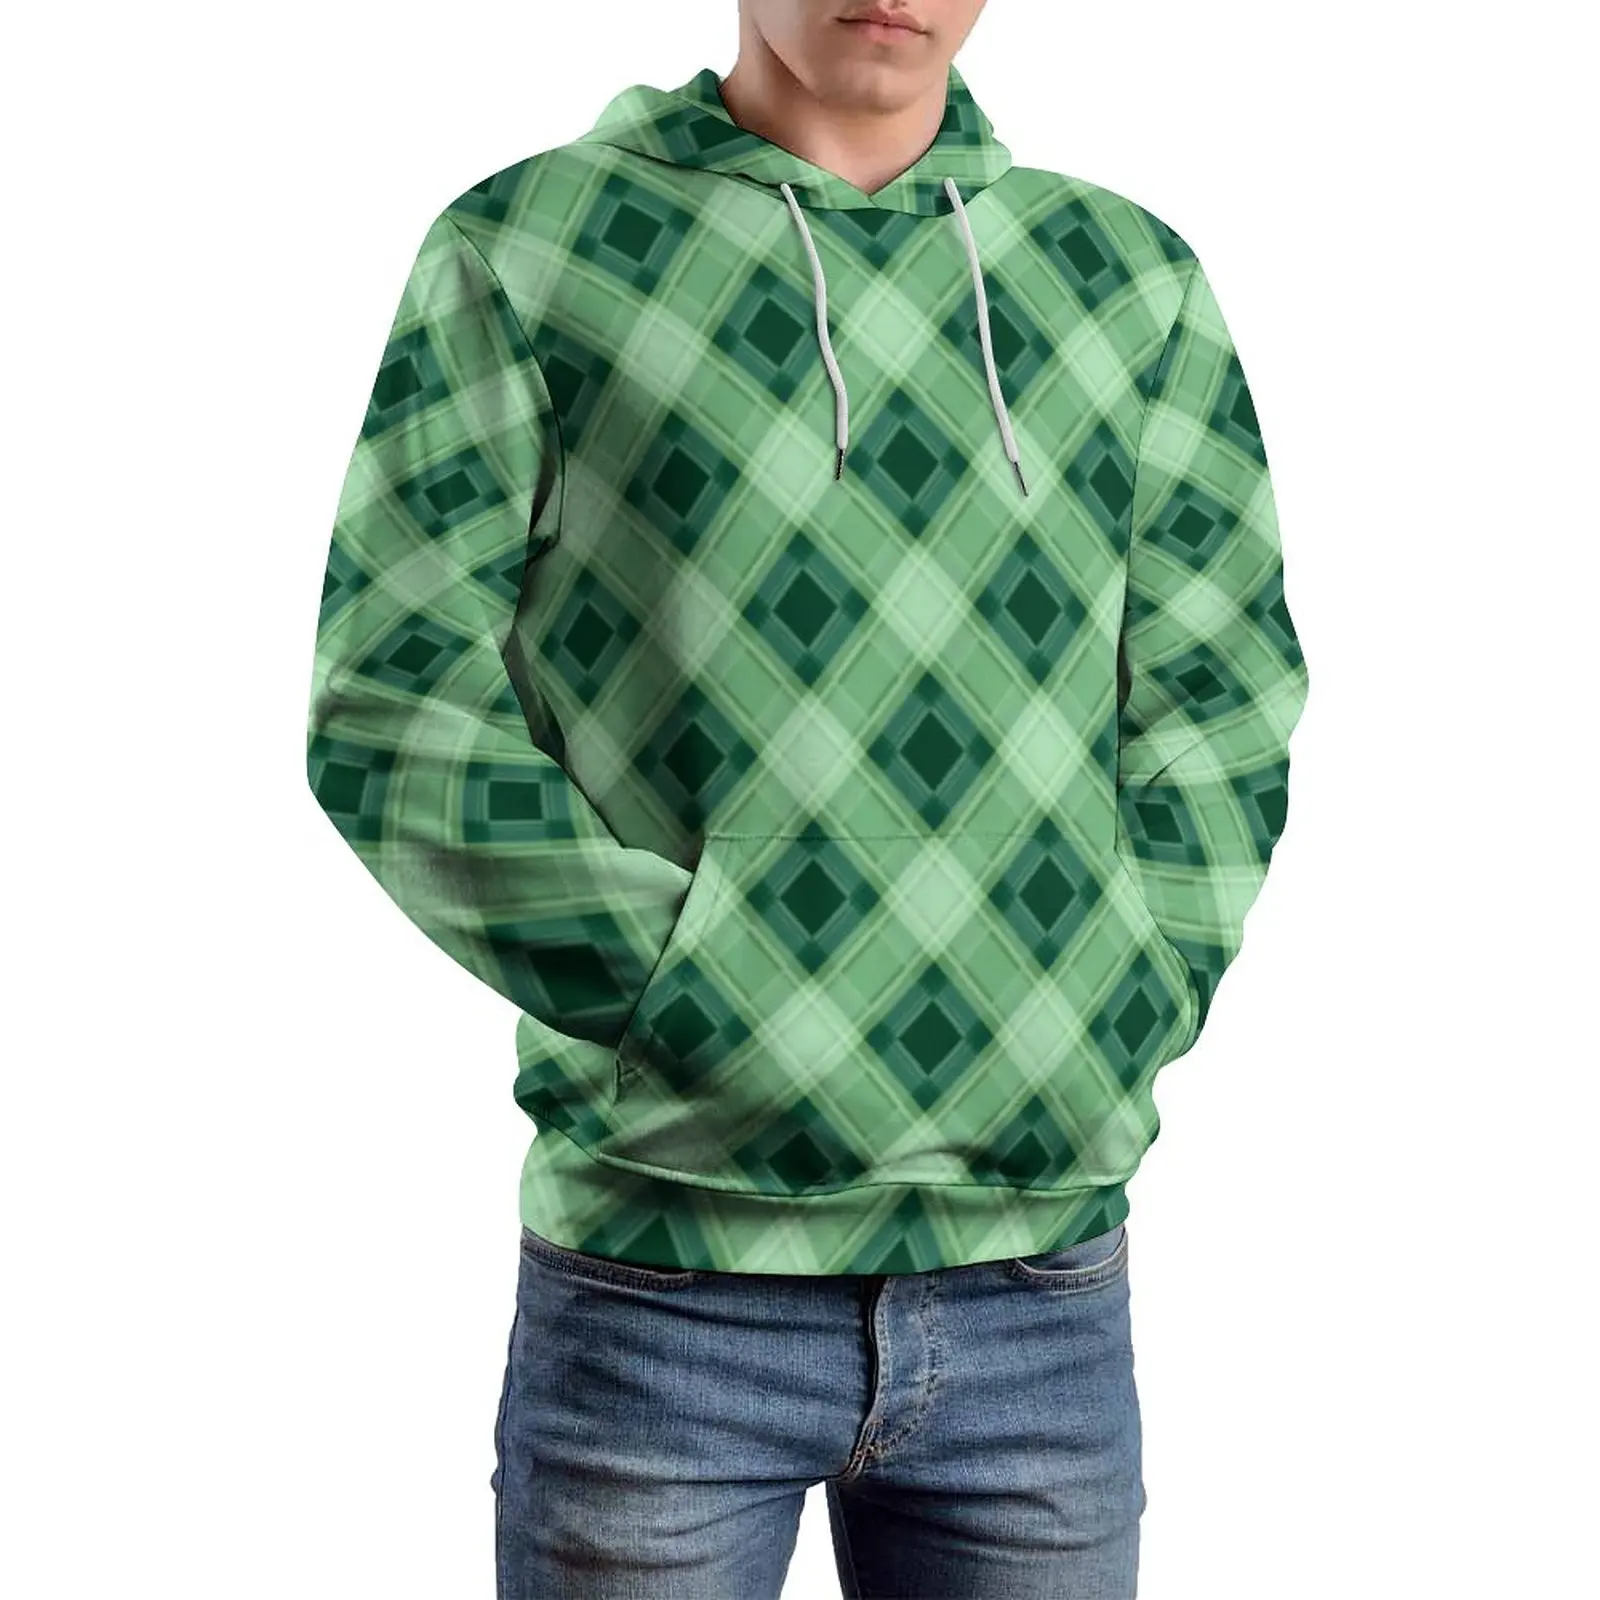 

Abstract Geo Print Casual Hoodies Men Checkered Plaid Elegant Hooded Sweatshirts Winter Long Sleeve Street Wear Oversized Hoodie